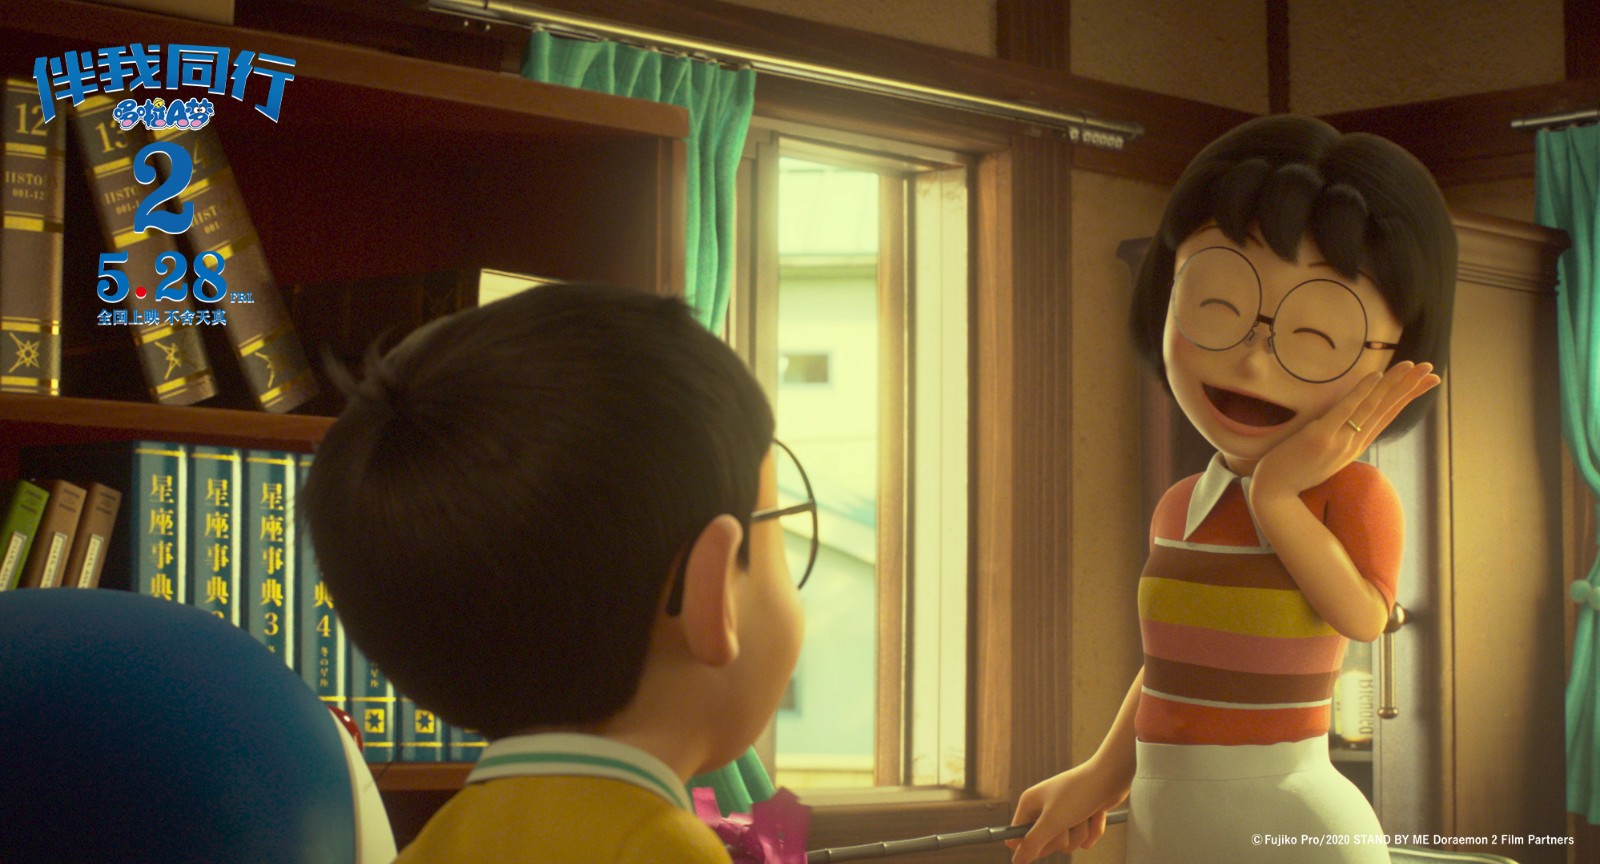 《哆啦a梦:伴我同行2》票房破亿 同档期口碑最佳成六一观影首选